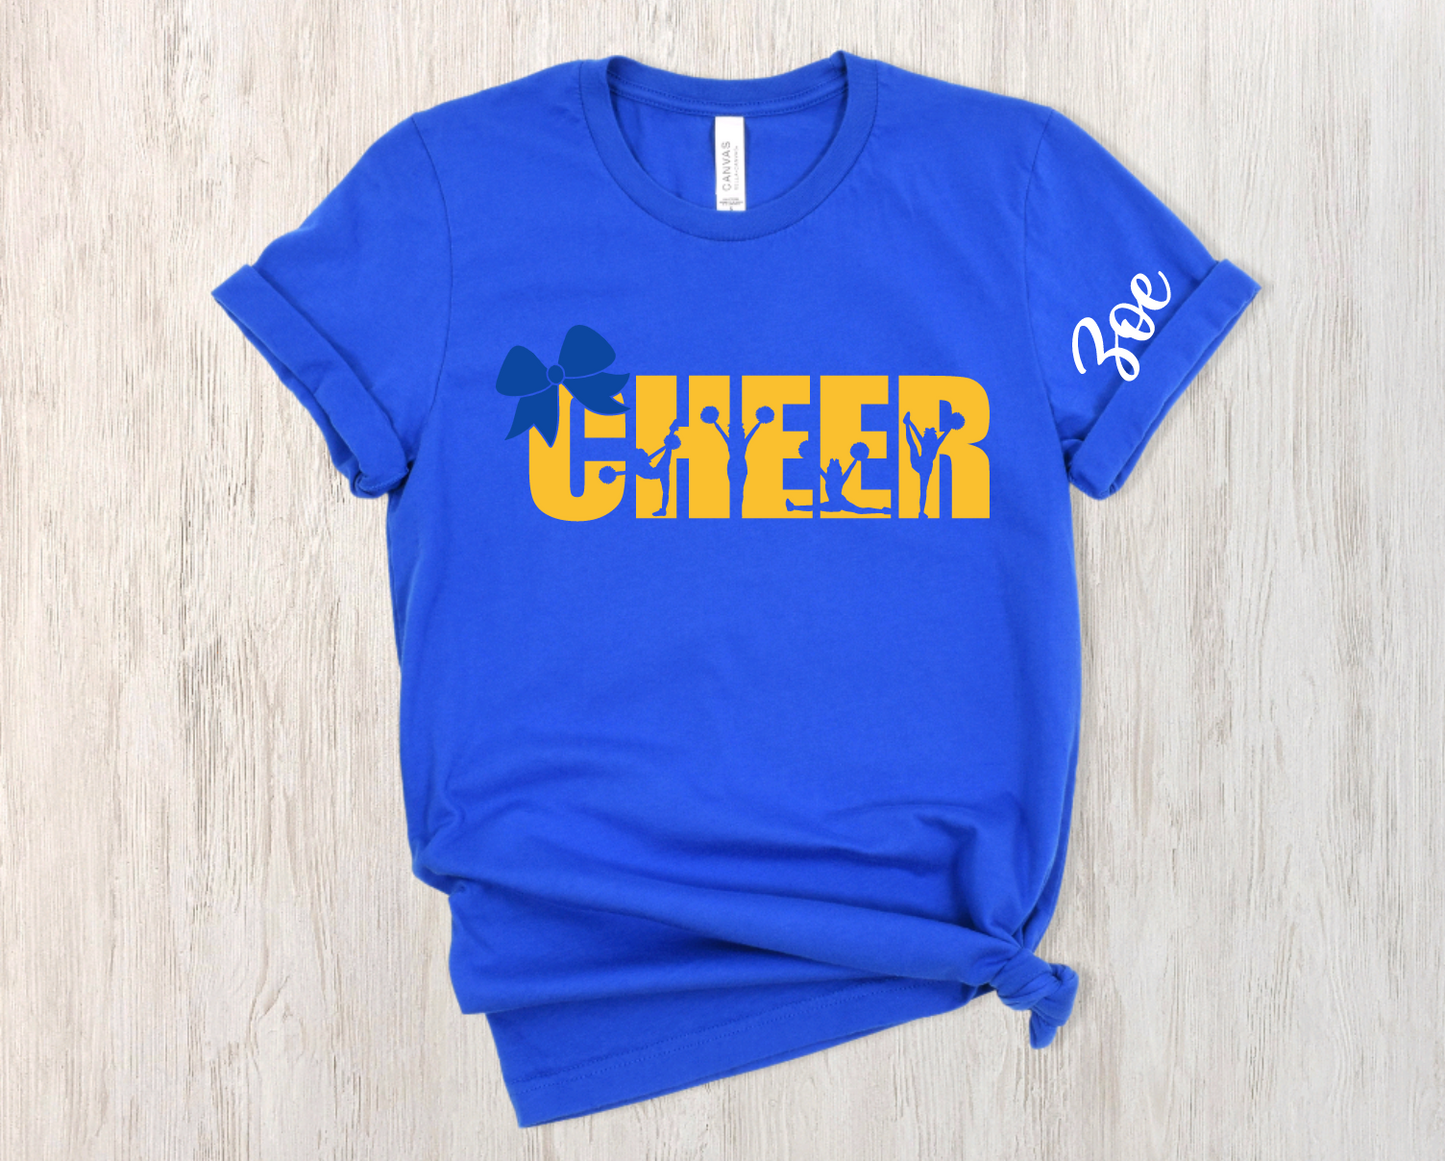 Cheer Shirt